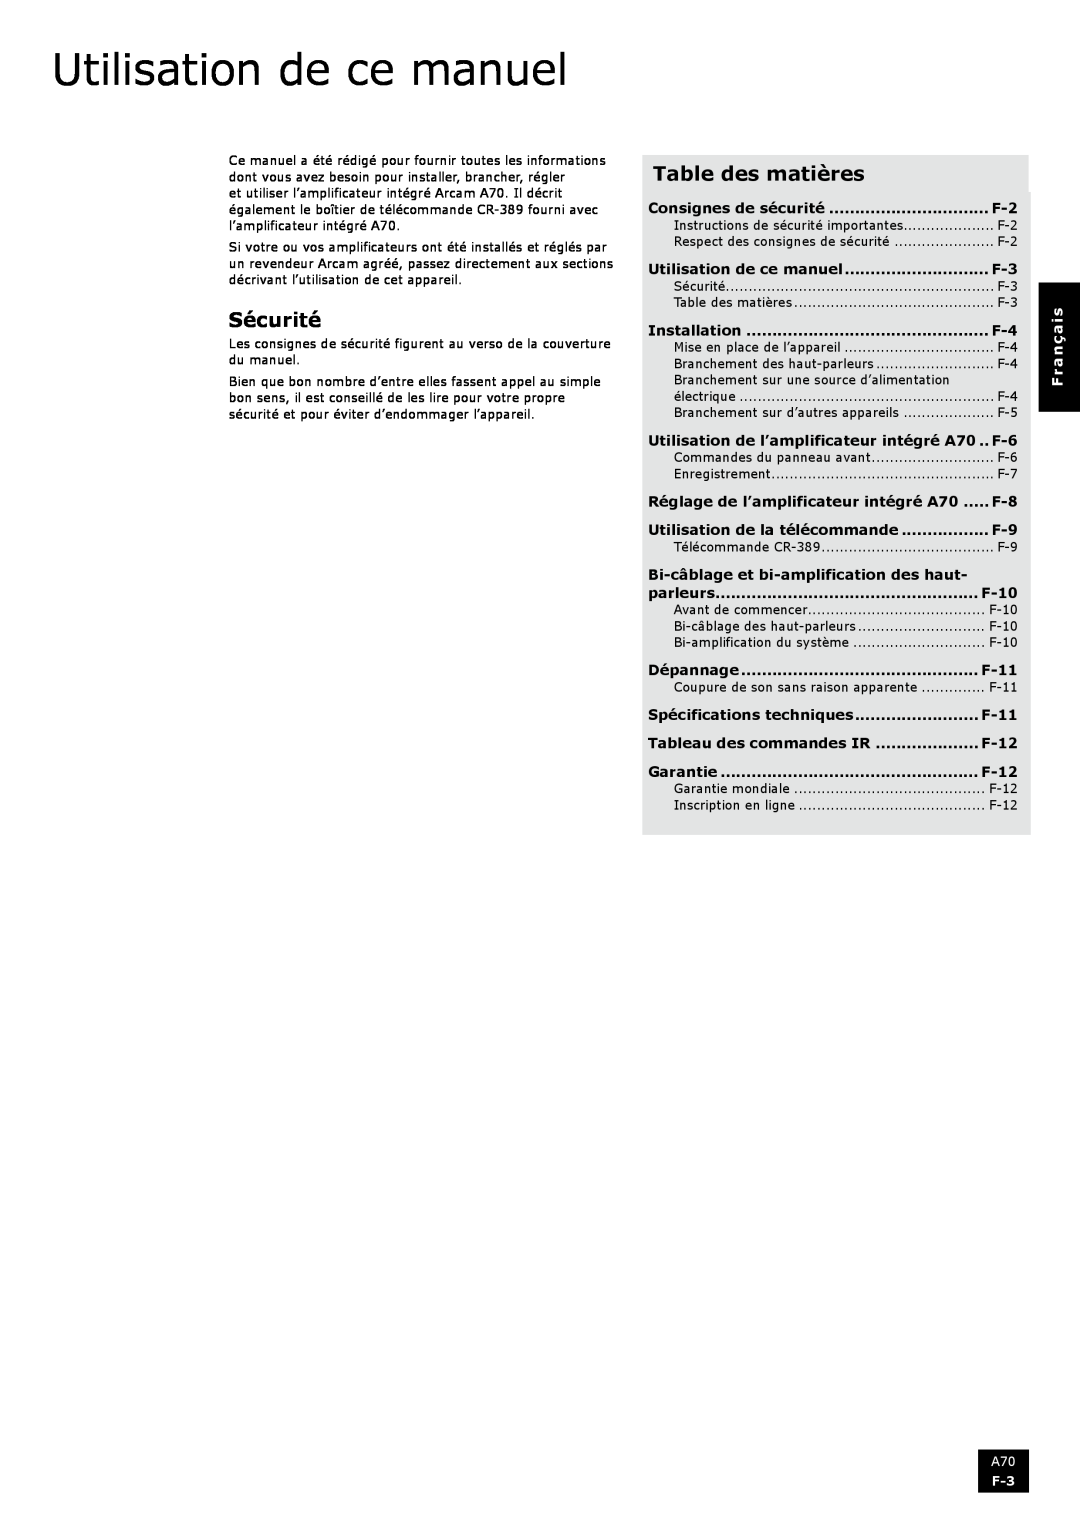 Arcam A70 manual Utilisation de ce manuel, Sécurité, Table des matières, Français 